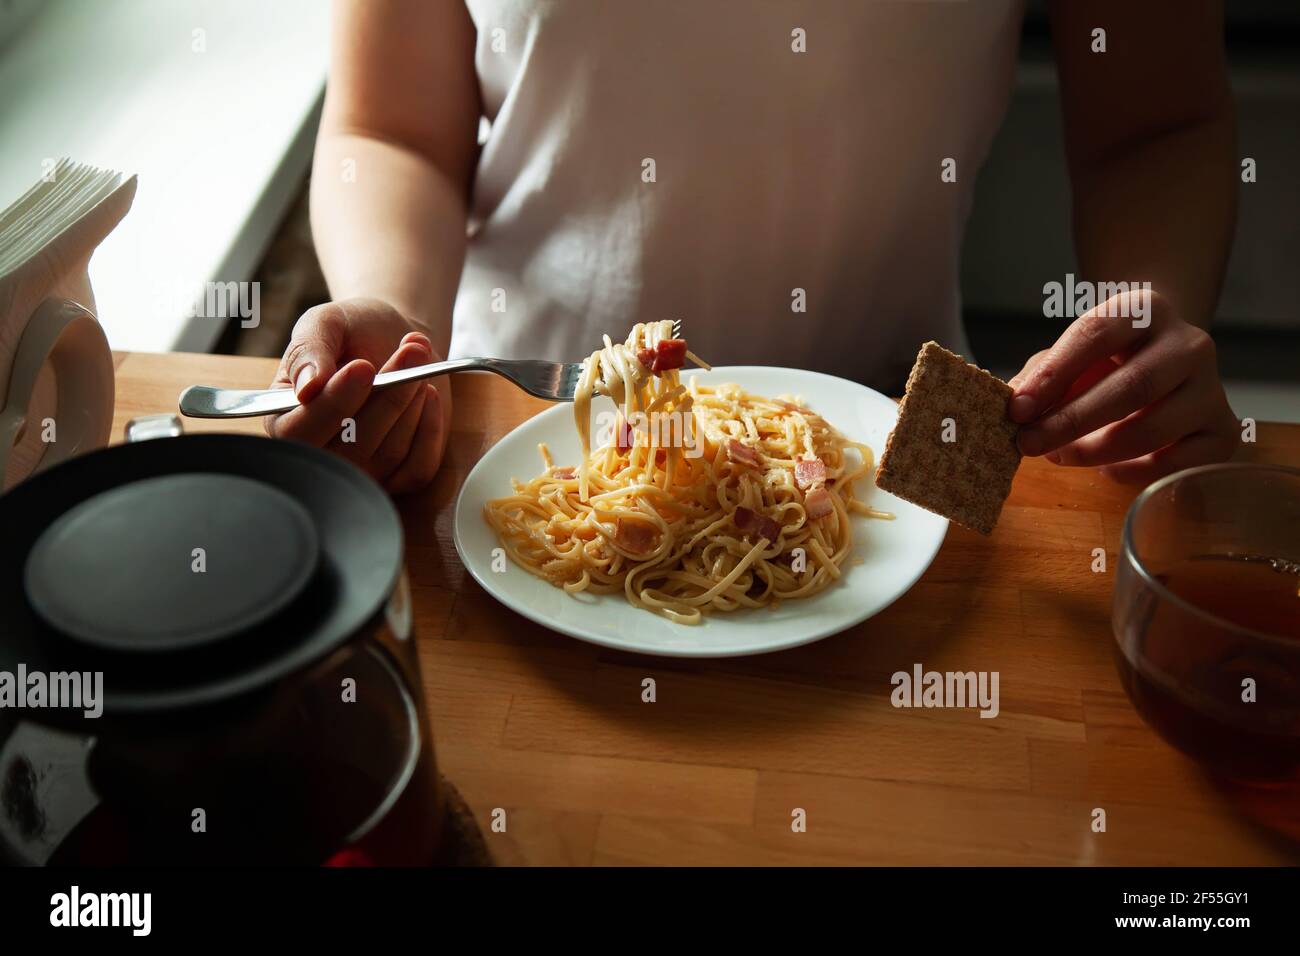 Ein Mädchen in hausgemachten Kleidern essen italienische Spaghetti, Carbonara am Tisch. Hausgemachtes Mittagessen, Hände mit einem Gericht Nahaufnahme Stockfoto